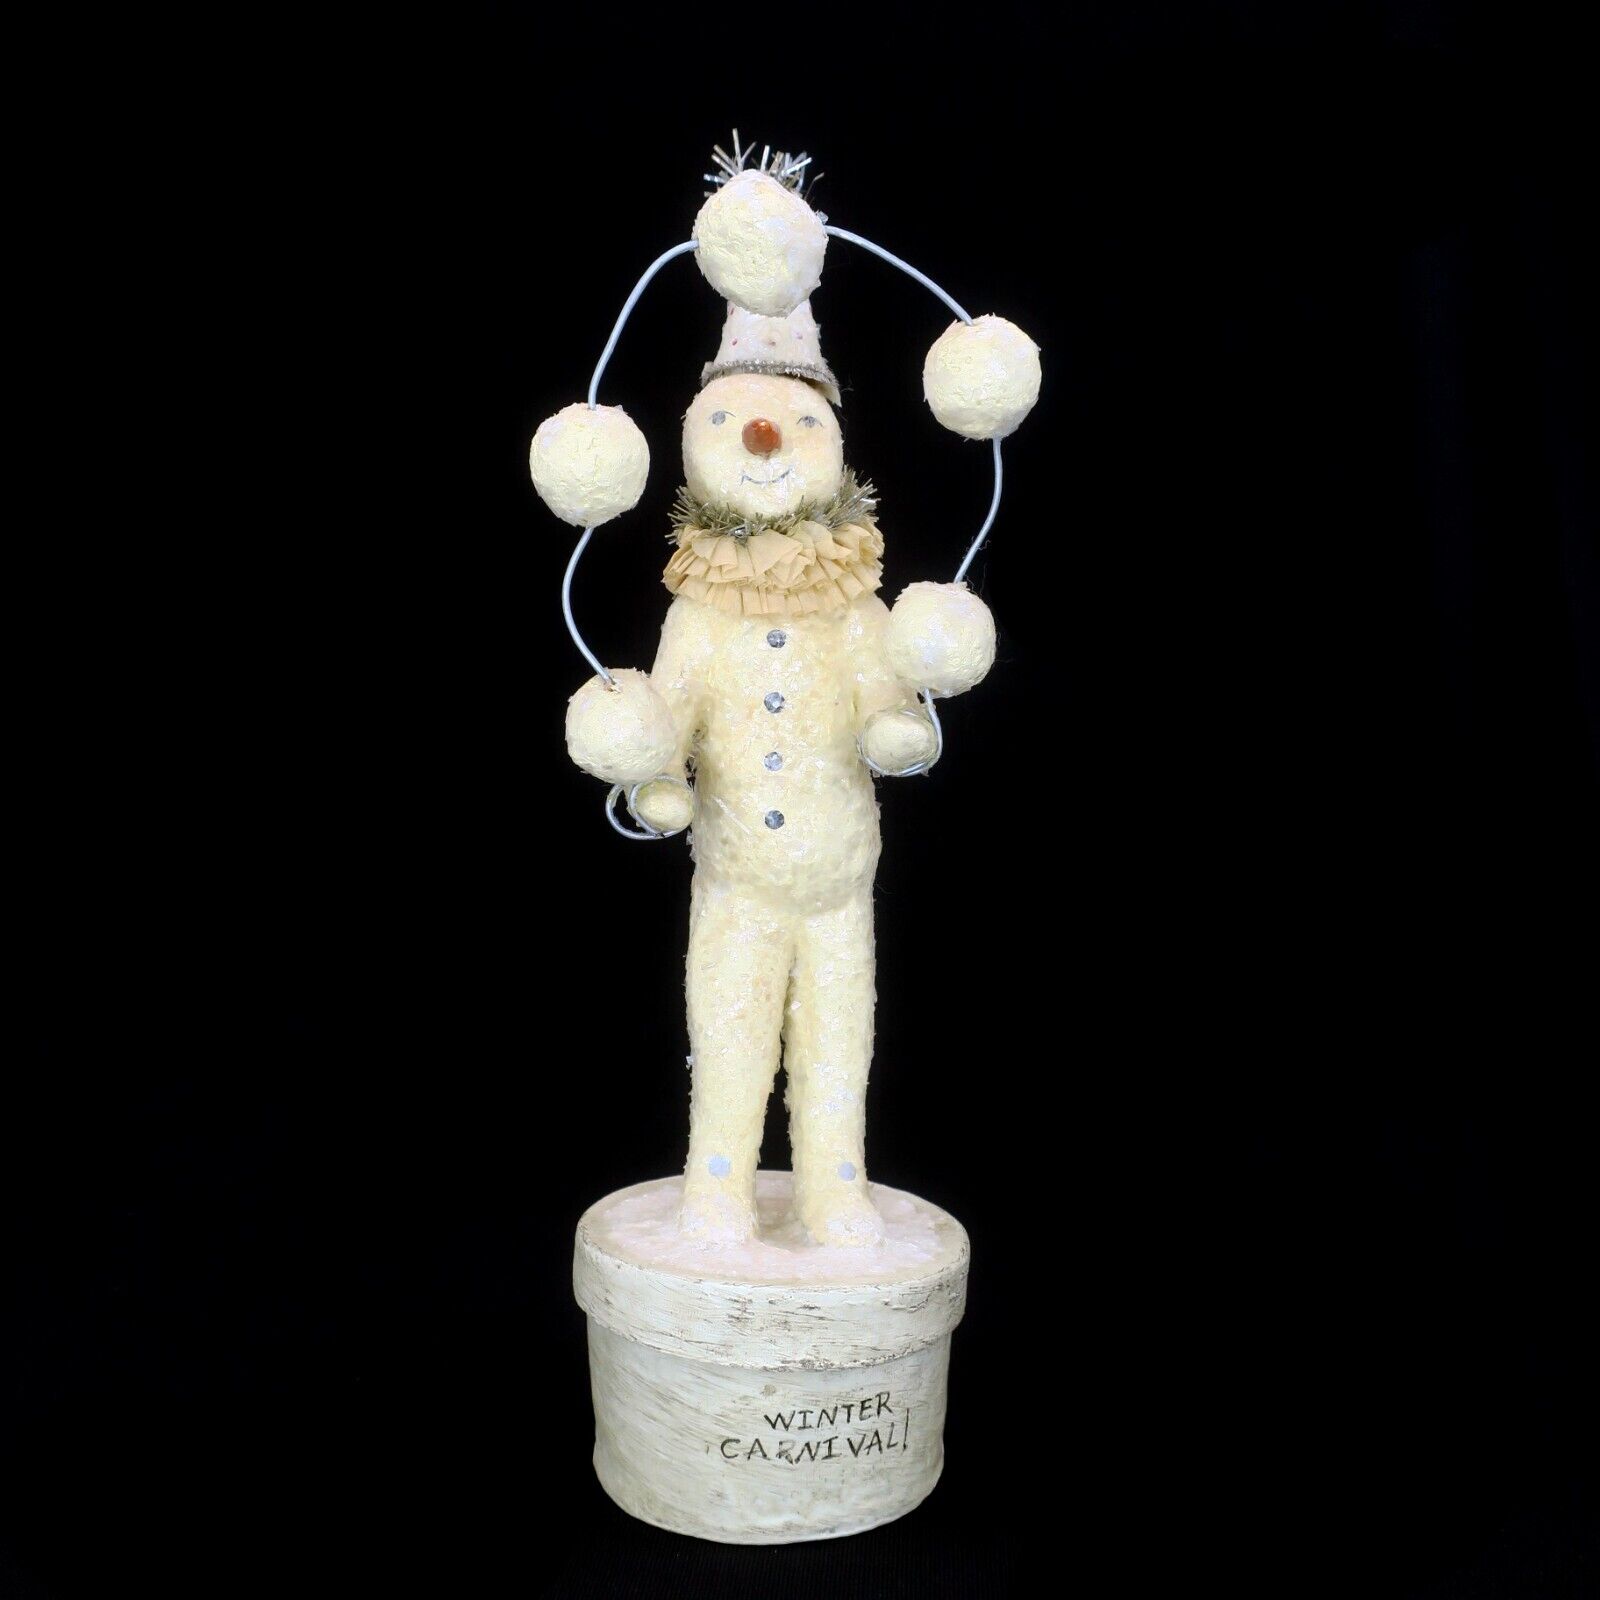 Vickie Smyers Juggling Snowman Winter Carnival Primitive Folk Art Bethany Lowe